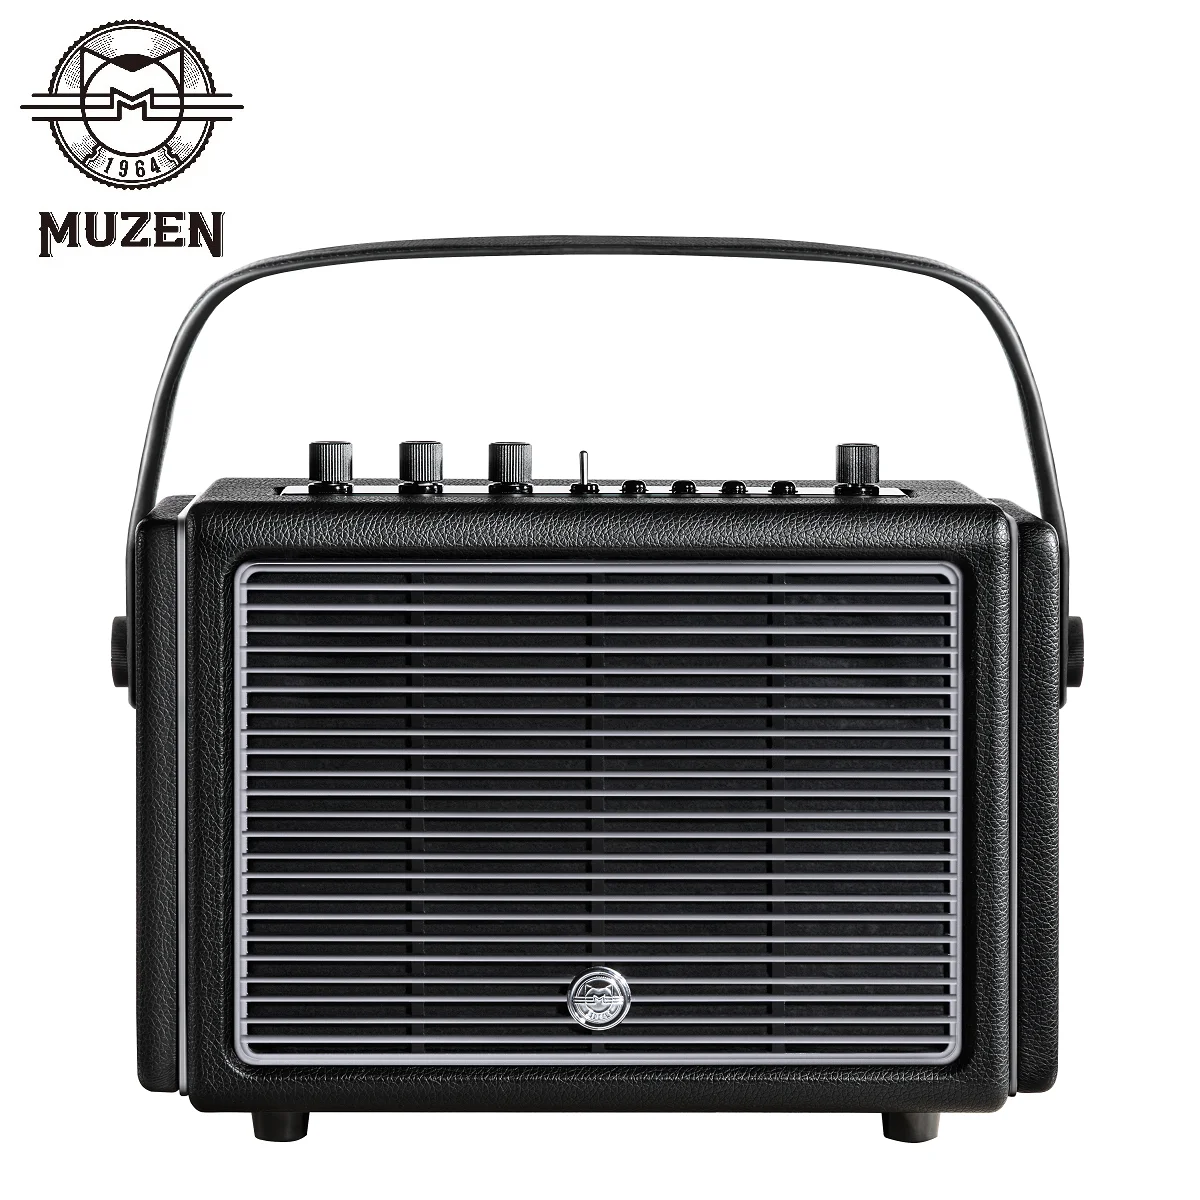 

Профессиональная стерео Беспроводная Bluetooth-Колонка MUZEN Mate4 64 Вт деревянная Ретро многонаправленная звуковая панель сабвуфер